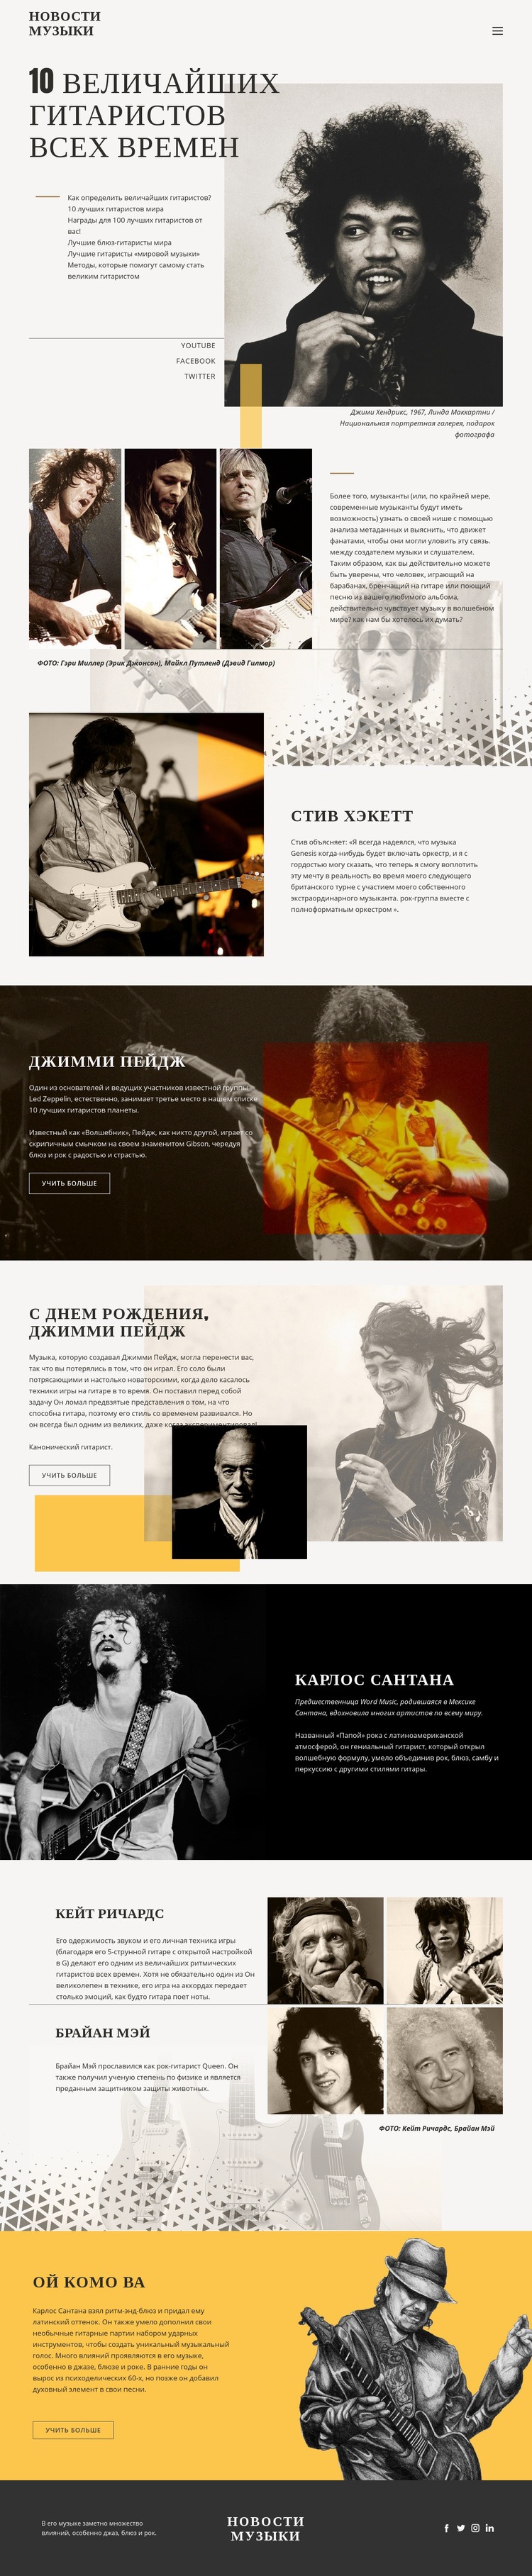 Лучшие гитаристы Шаблон веб-сайта